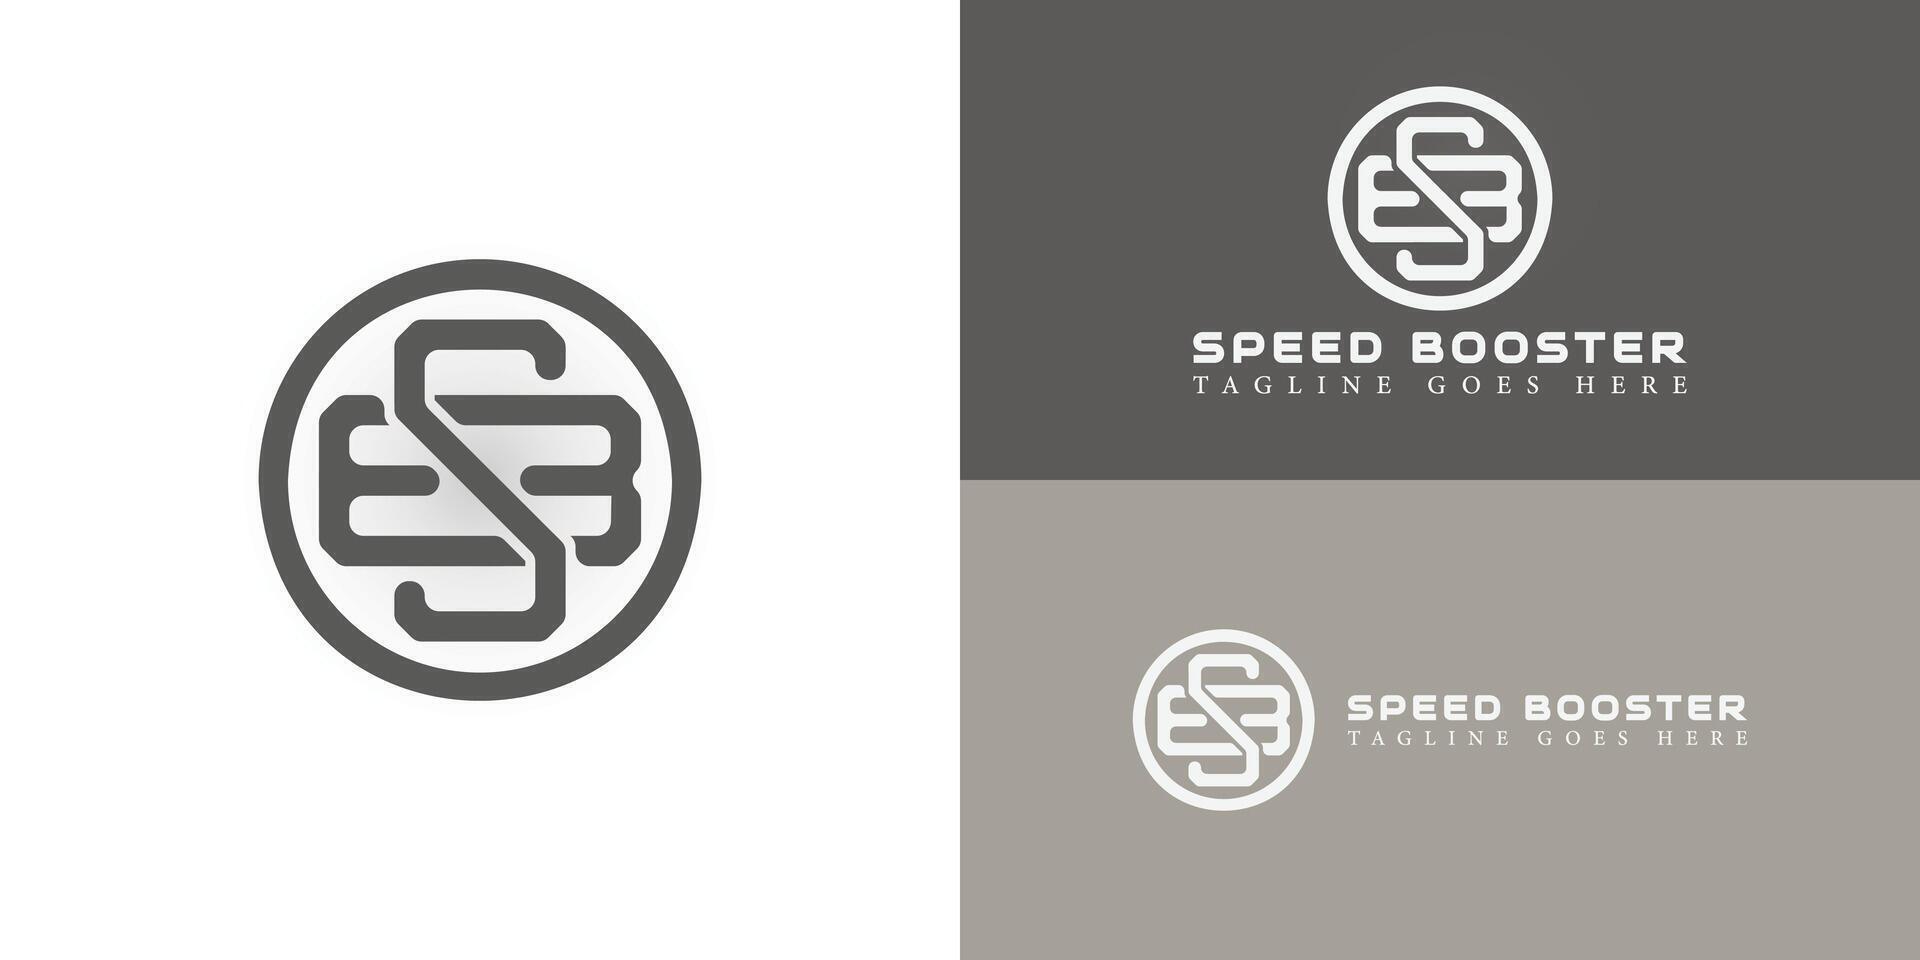 abstrato letra inicial bs logotipo na cor preta isolado em fundo branco aplicado para logotipo da empresa de vestuário também adequado para as marcas ou empresas que possuem o nome inicial sb vetor